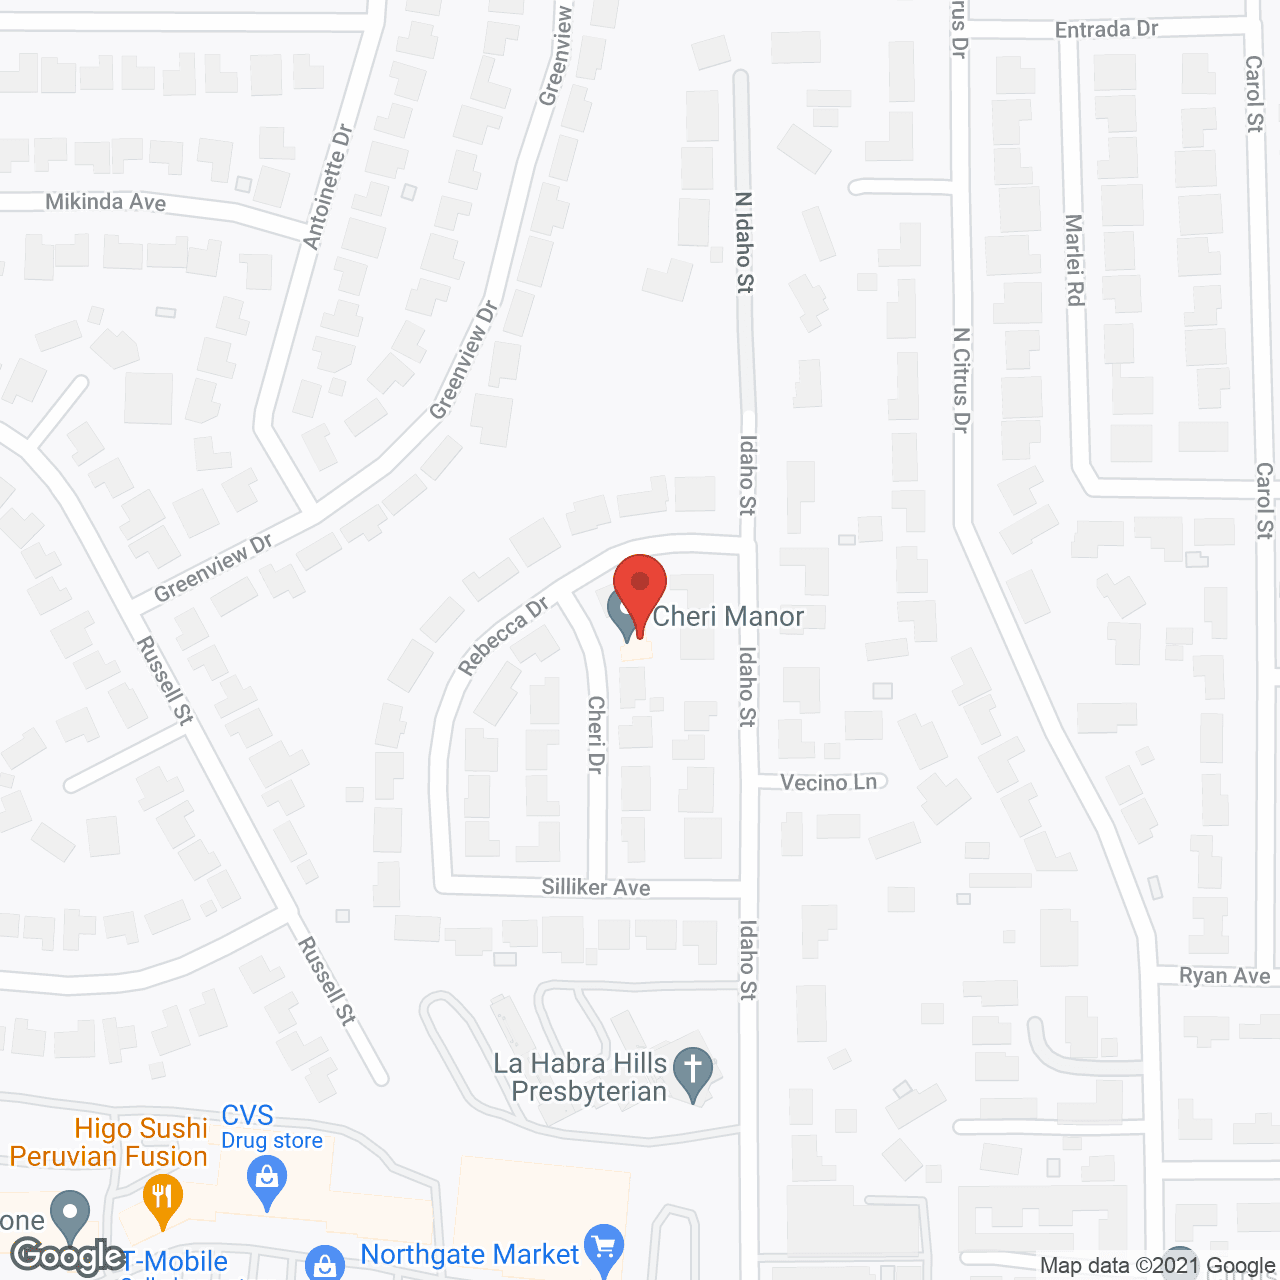 Cheri Manor in google map